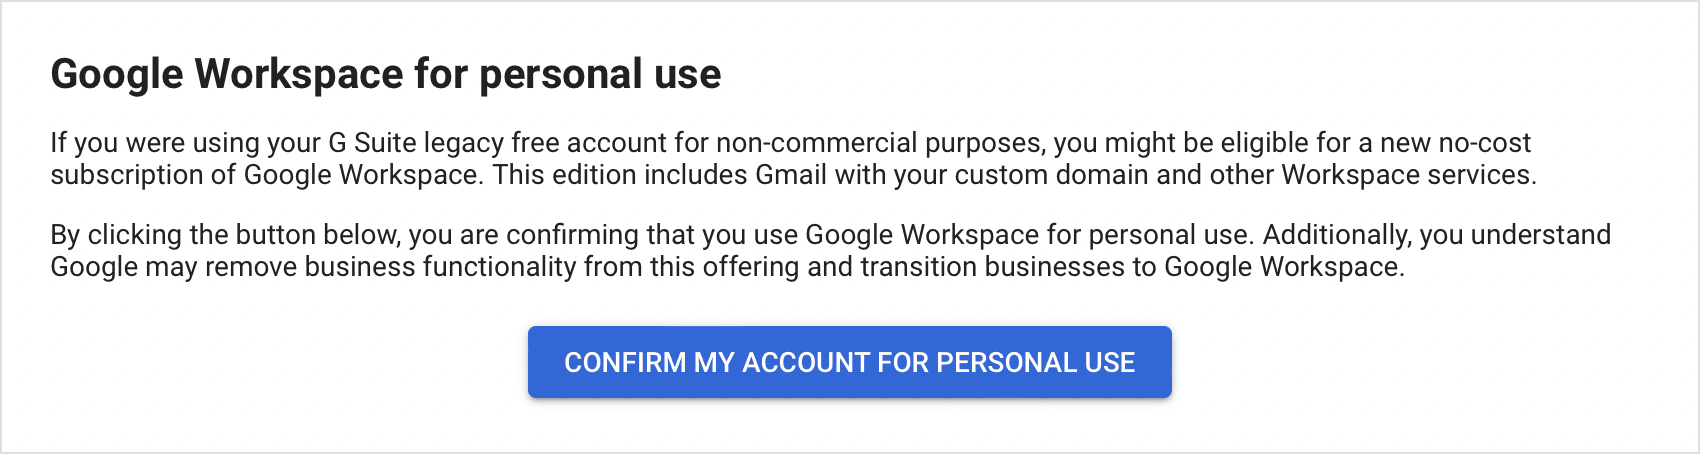 Potwierdzenie użytkowania usług Google do użytku osobistego